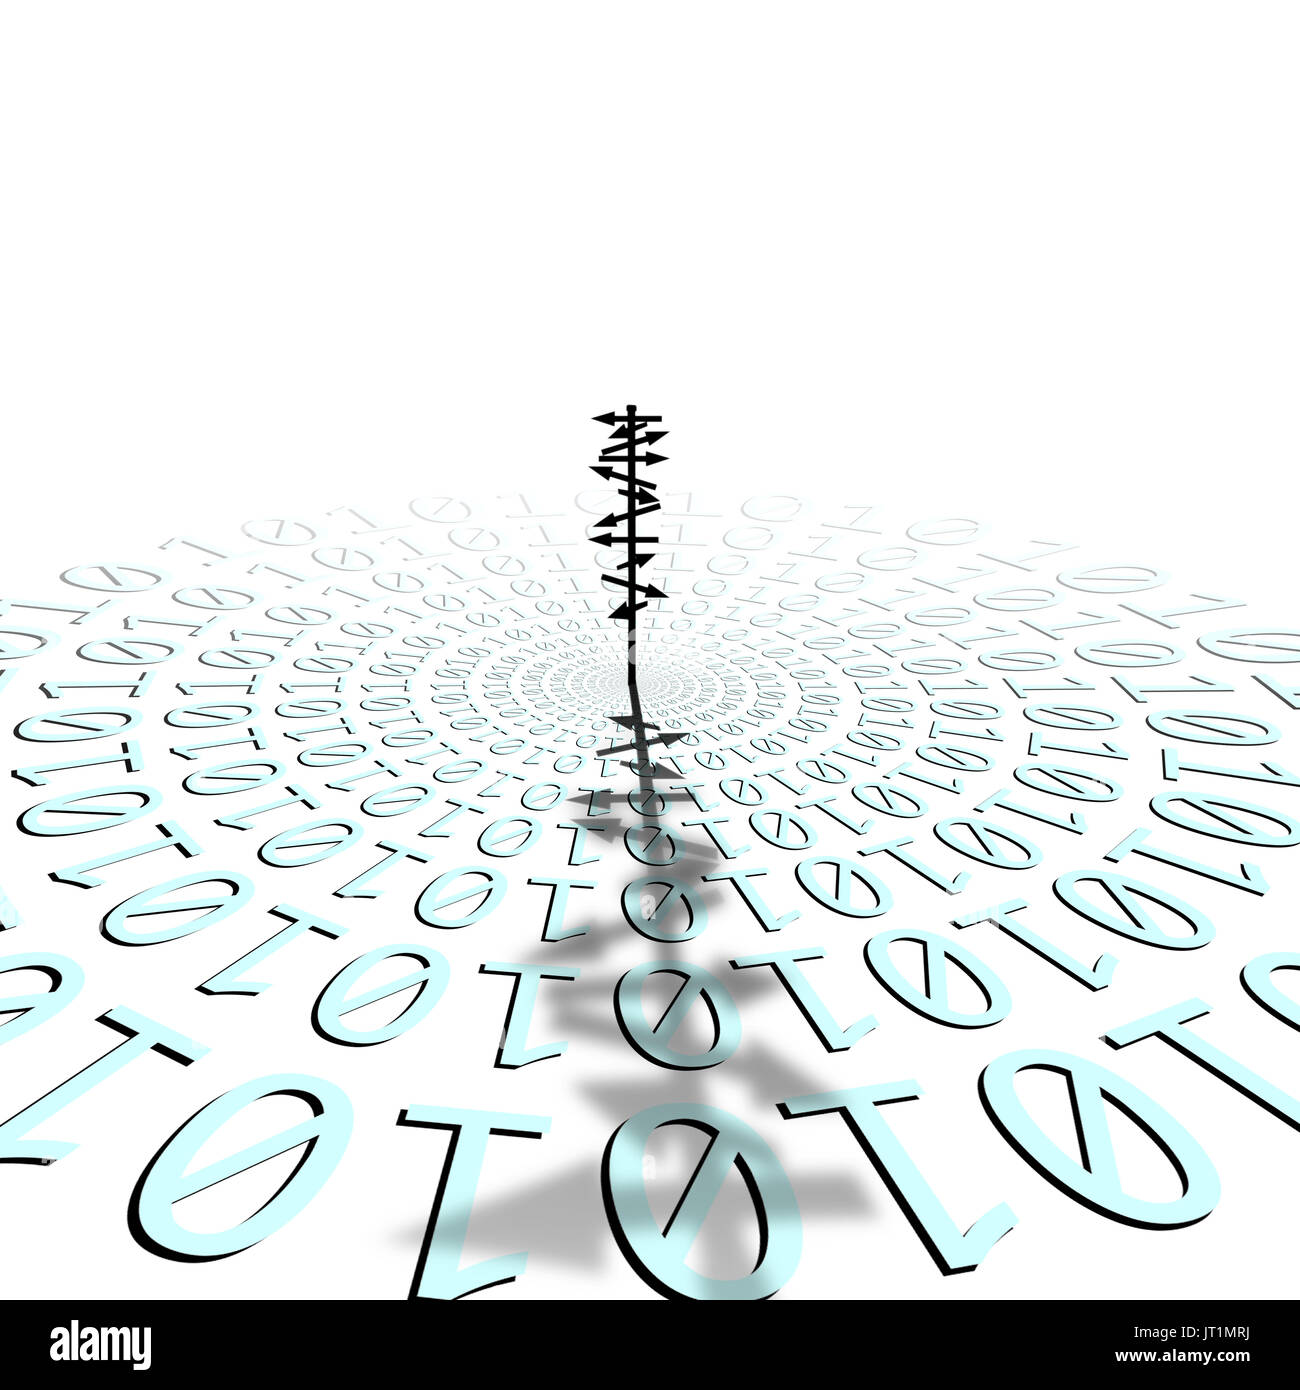 La silhouette de l'image conceptuelle signe directionnel sur la matrice du code binaire Banque D'Images